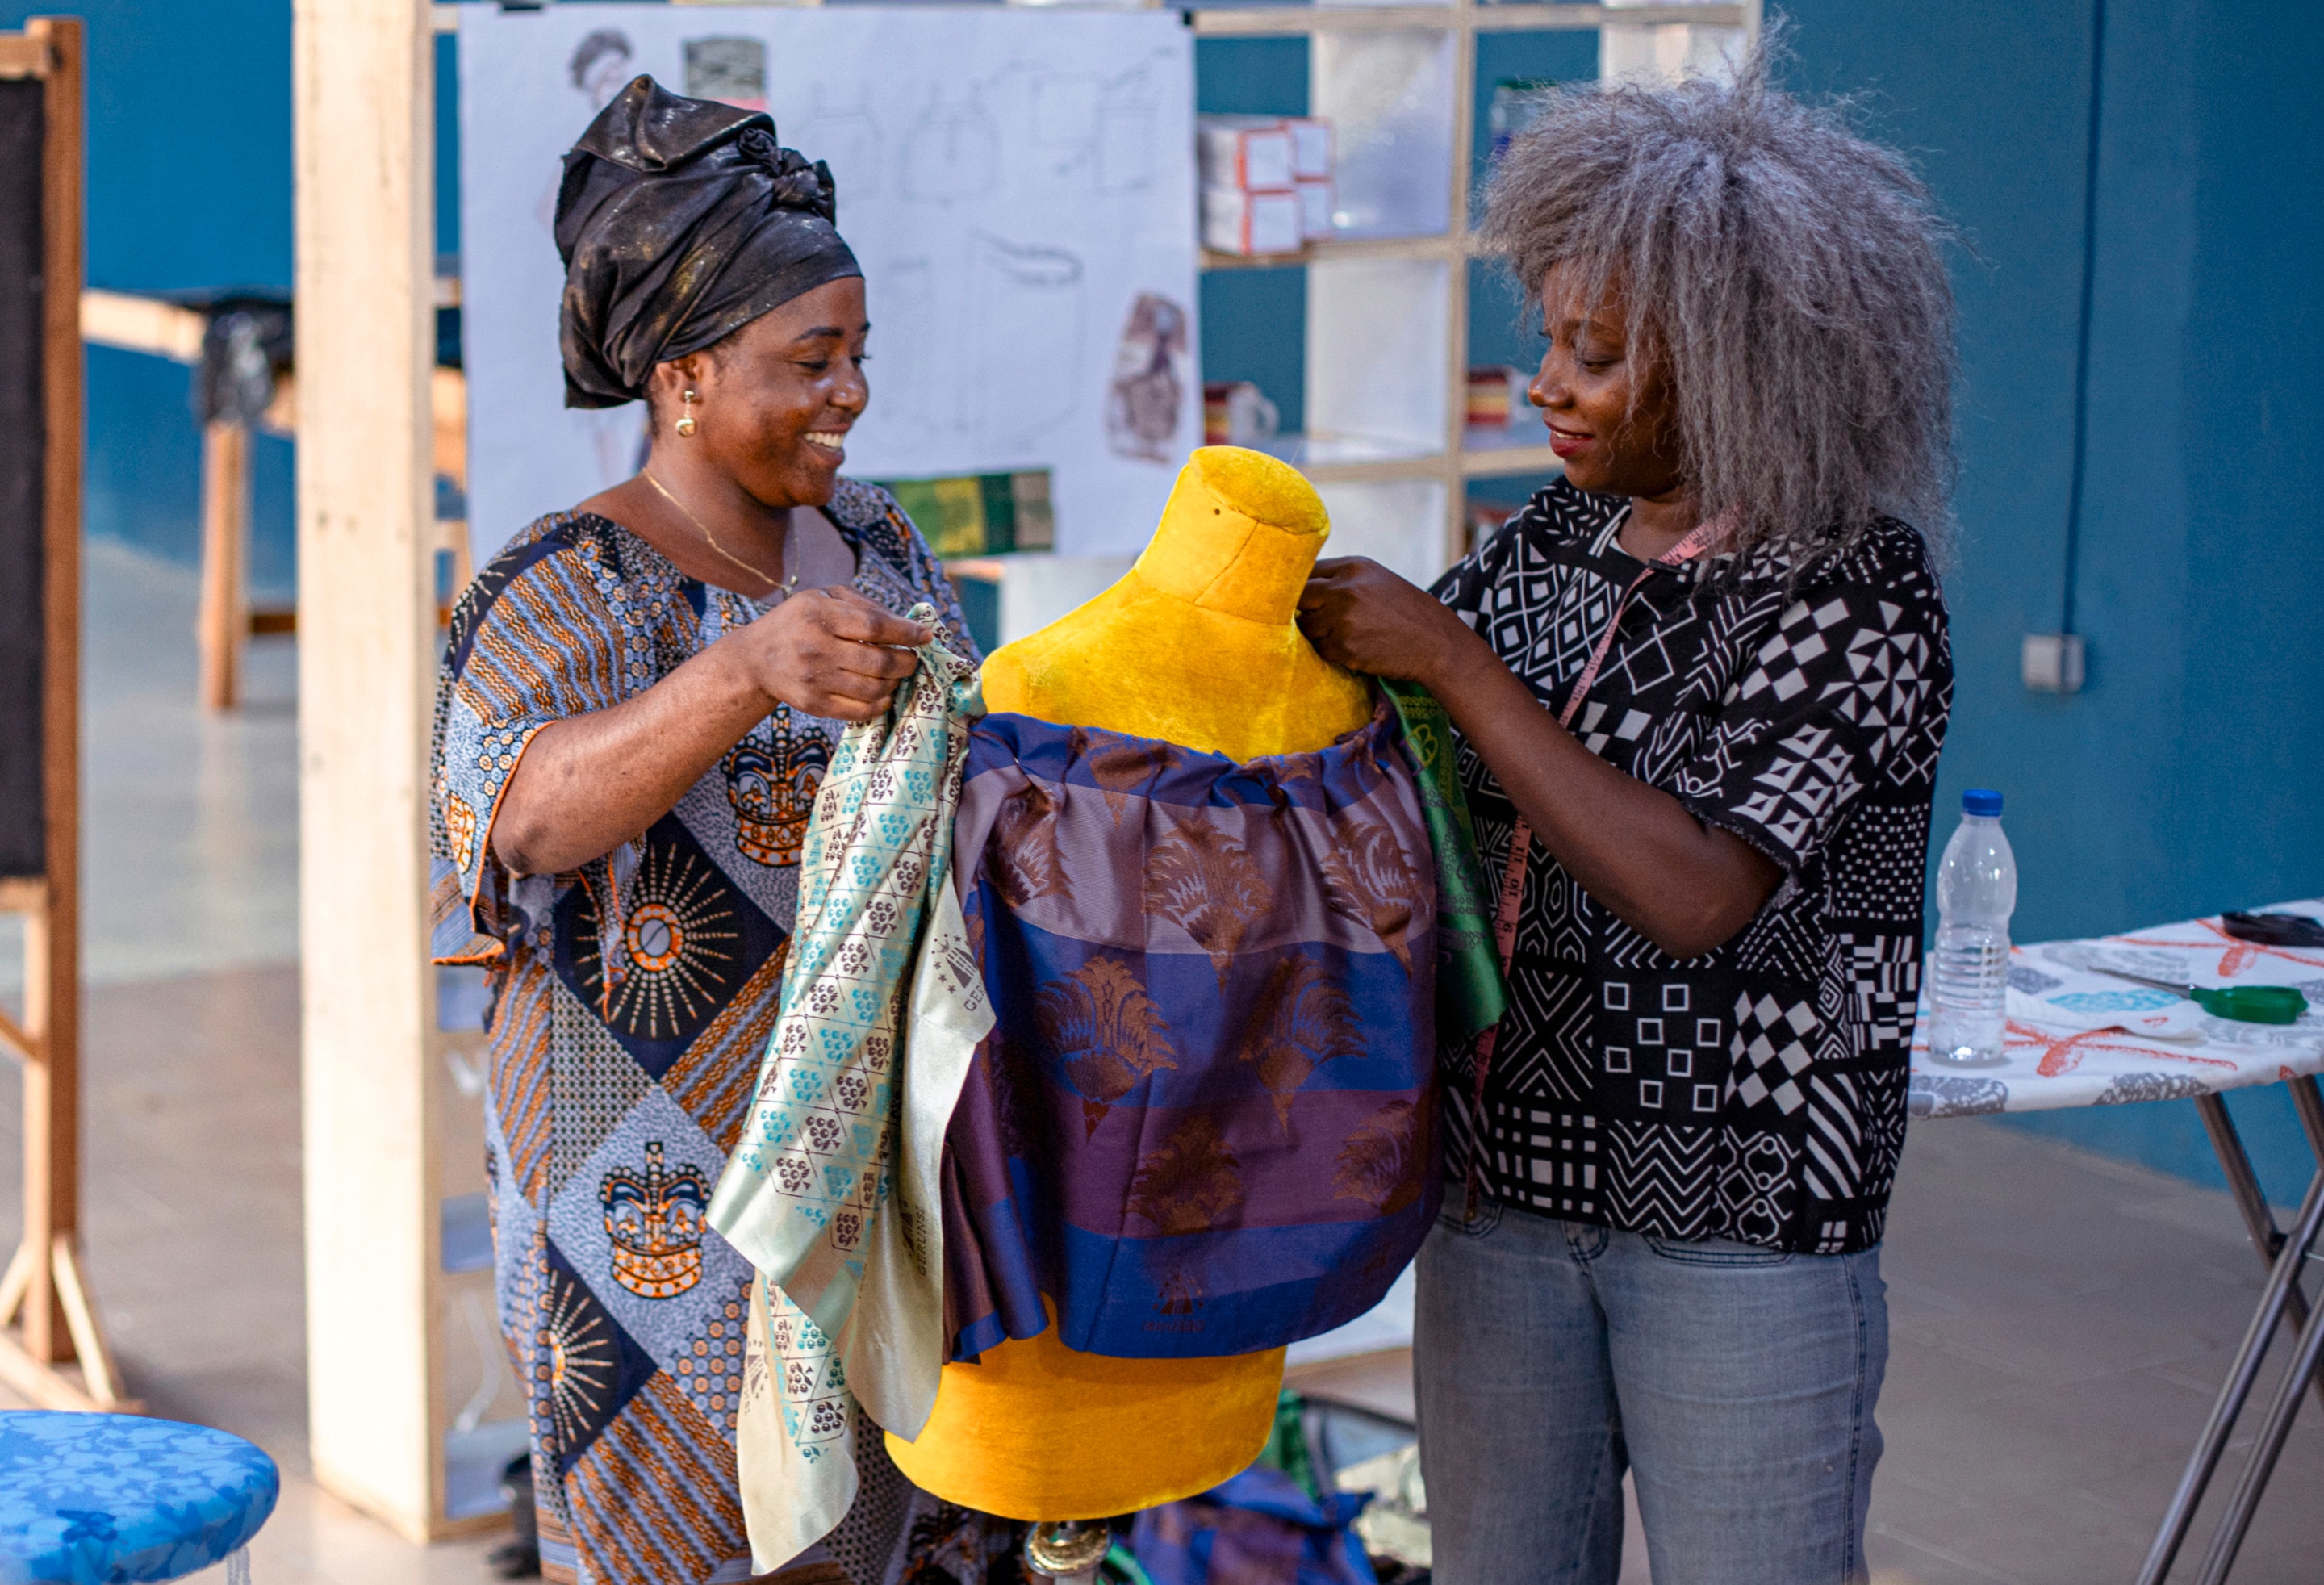 Rebecca Zoro unterrichtet eine afrikanische Frau in einem Nähkurs